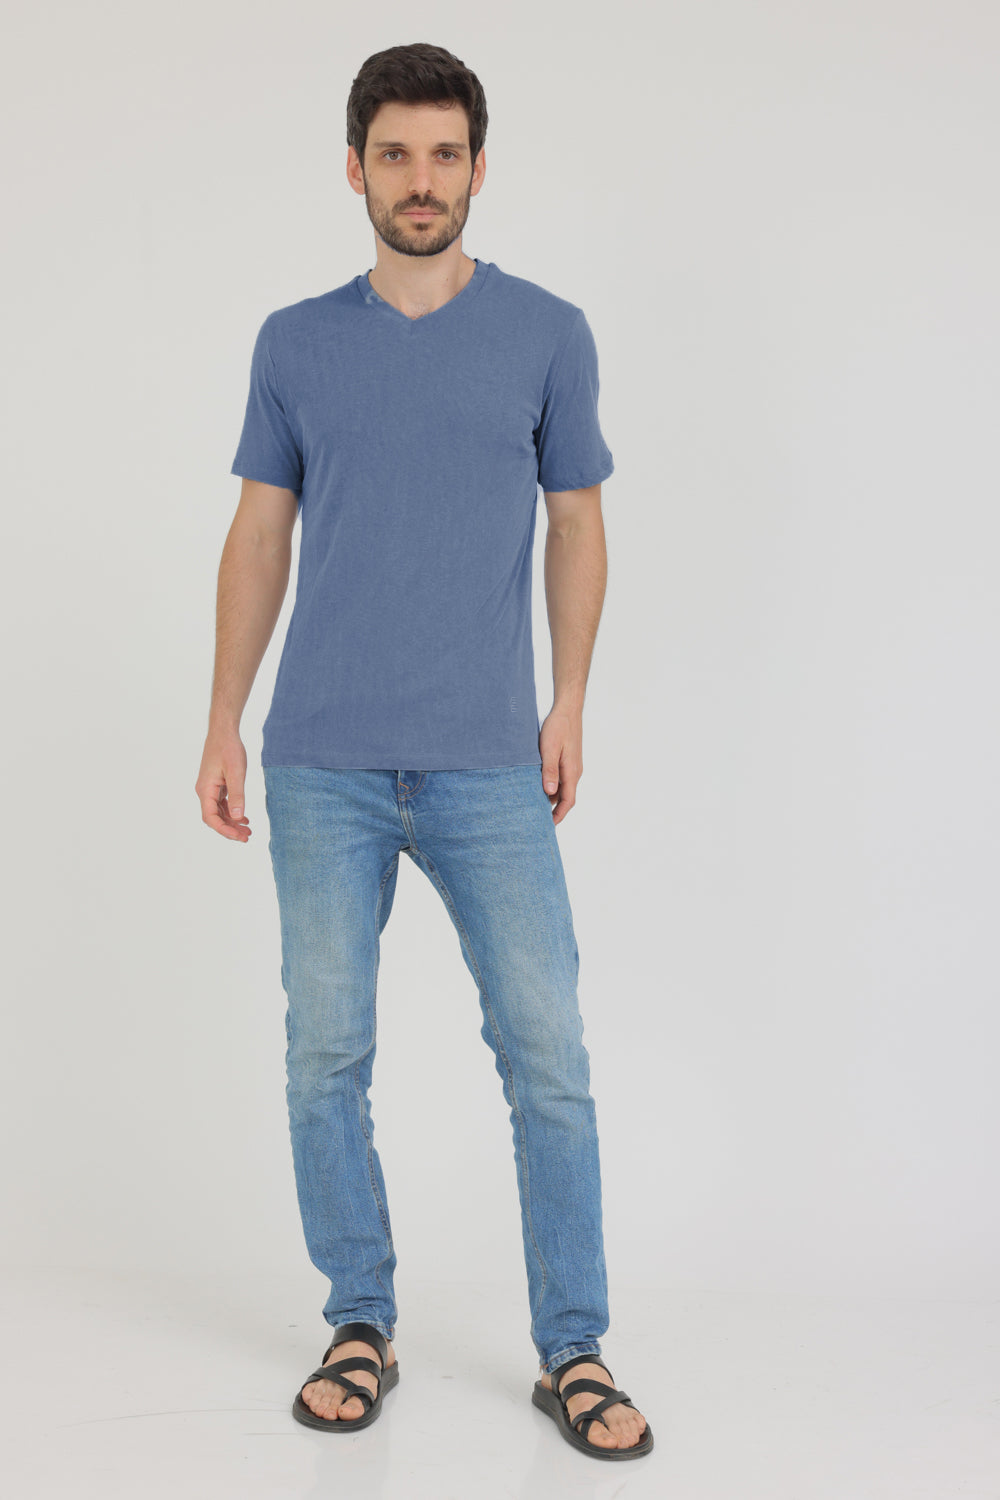 חולצת טי שירט קצרה לגבר צבע כחול ג'ינס